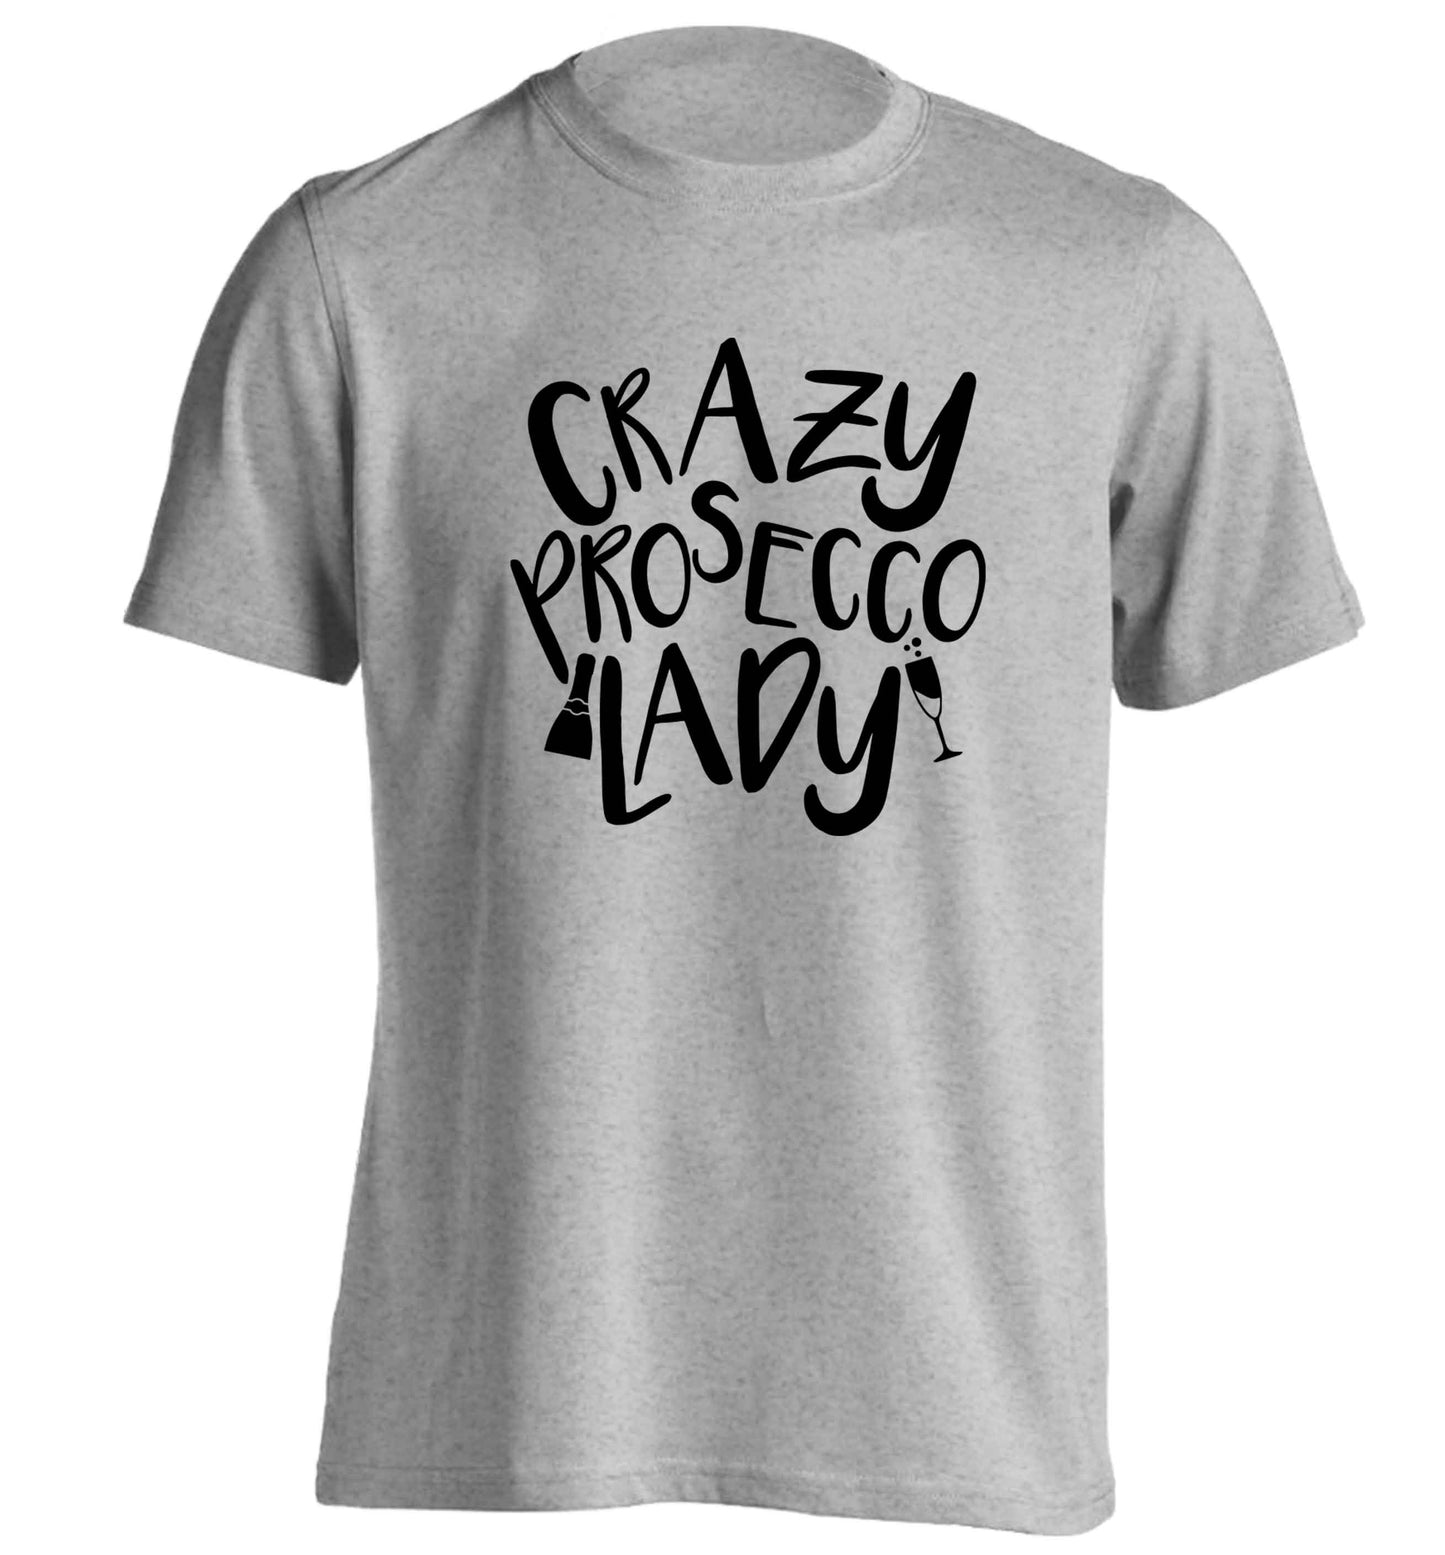 Crazy prosecco lady adults unisex grey Tshirt 2XL